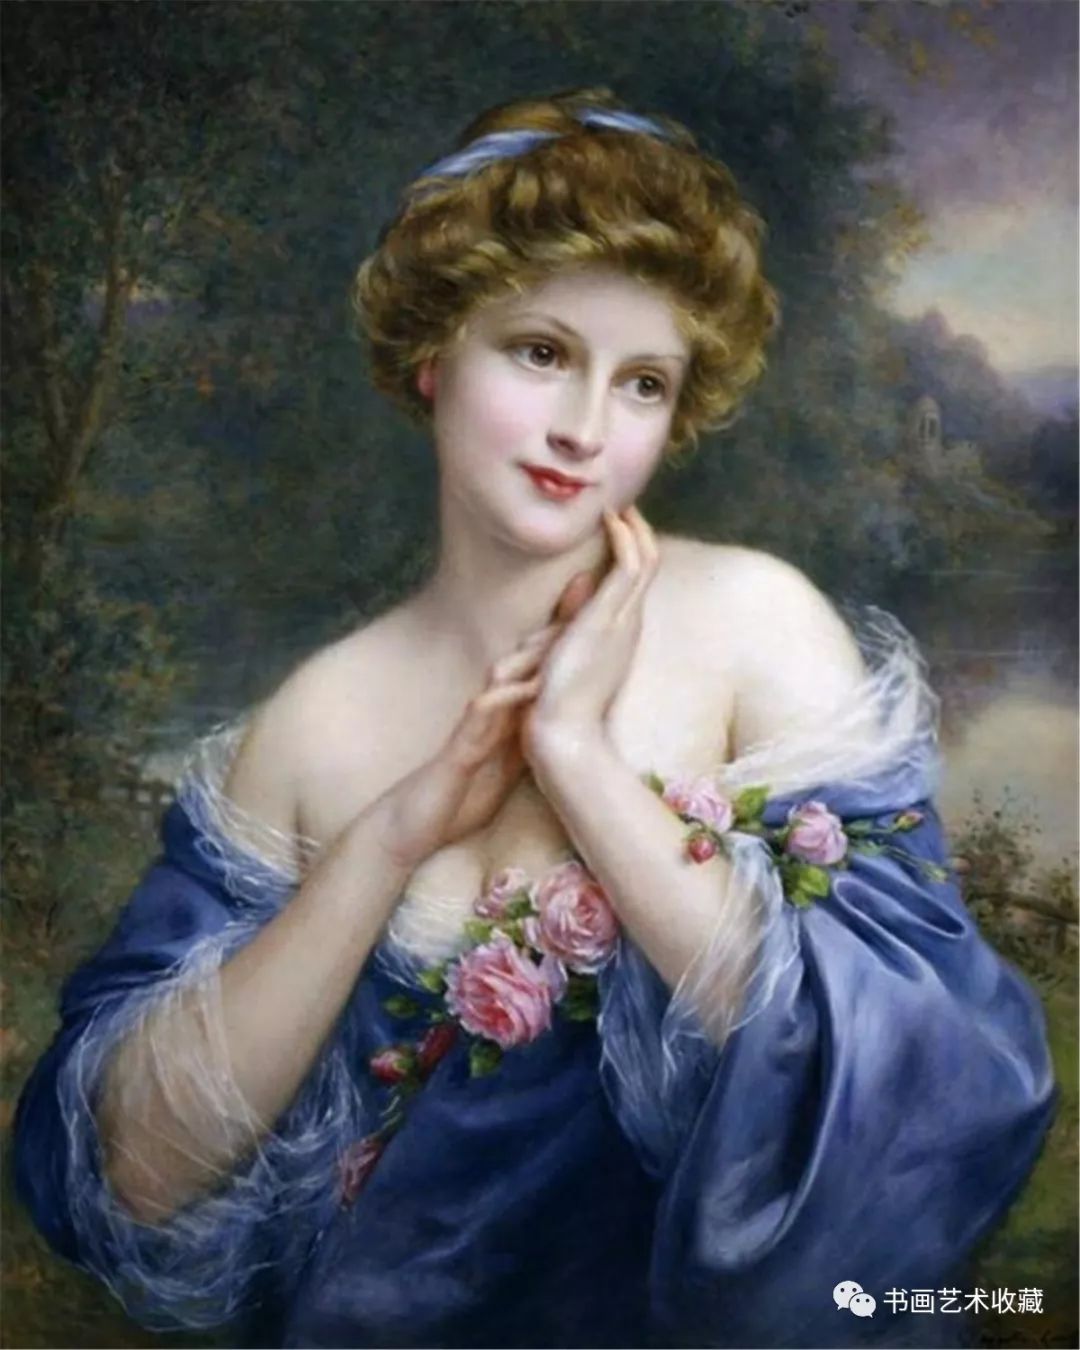 世界油画经典:法国画家卡维尔描绘的女人